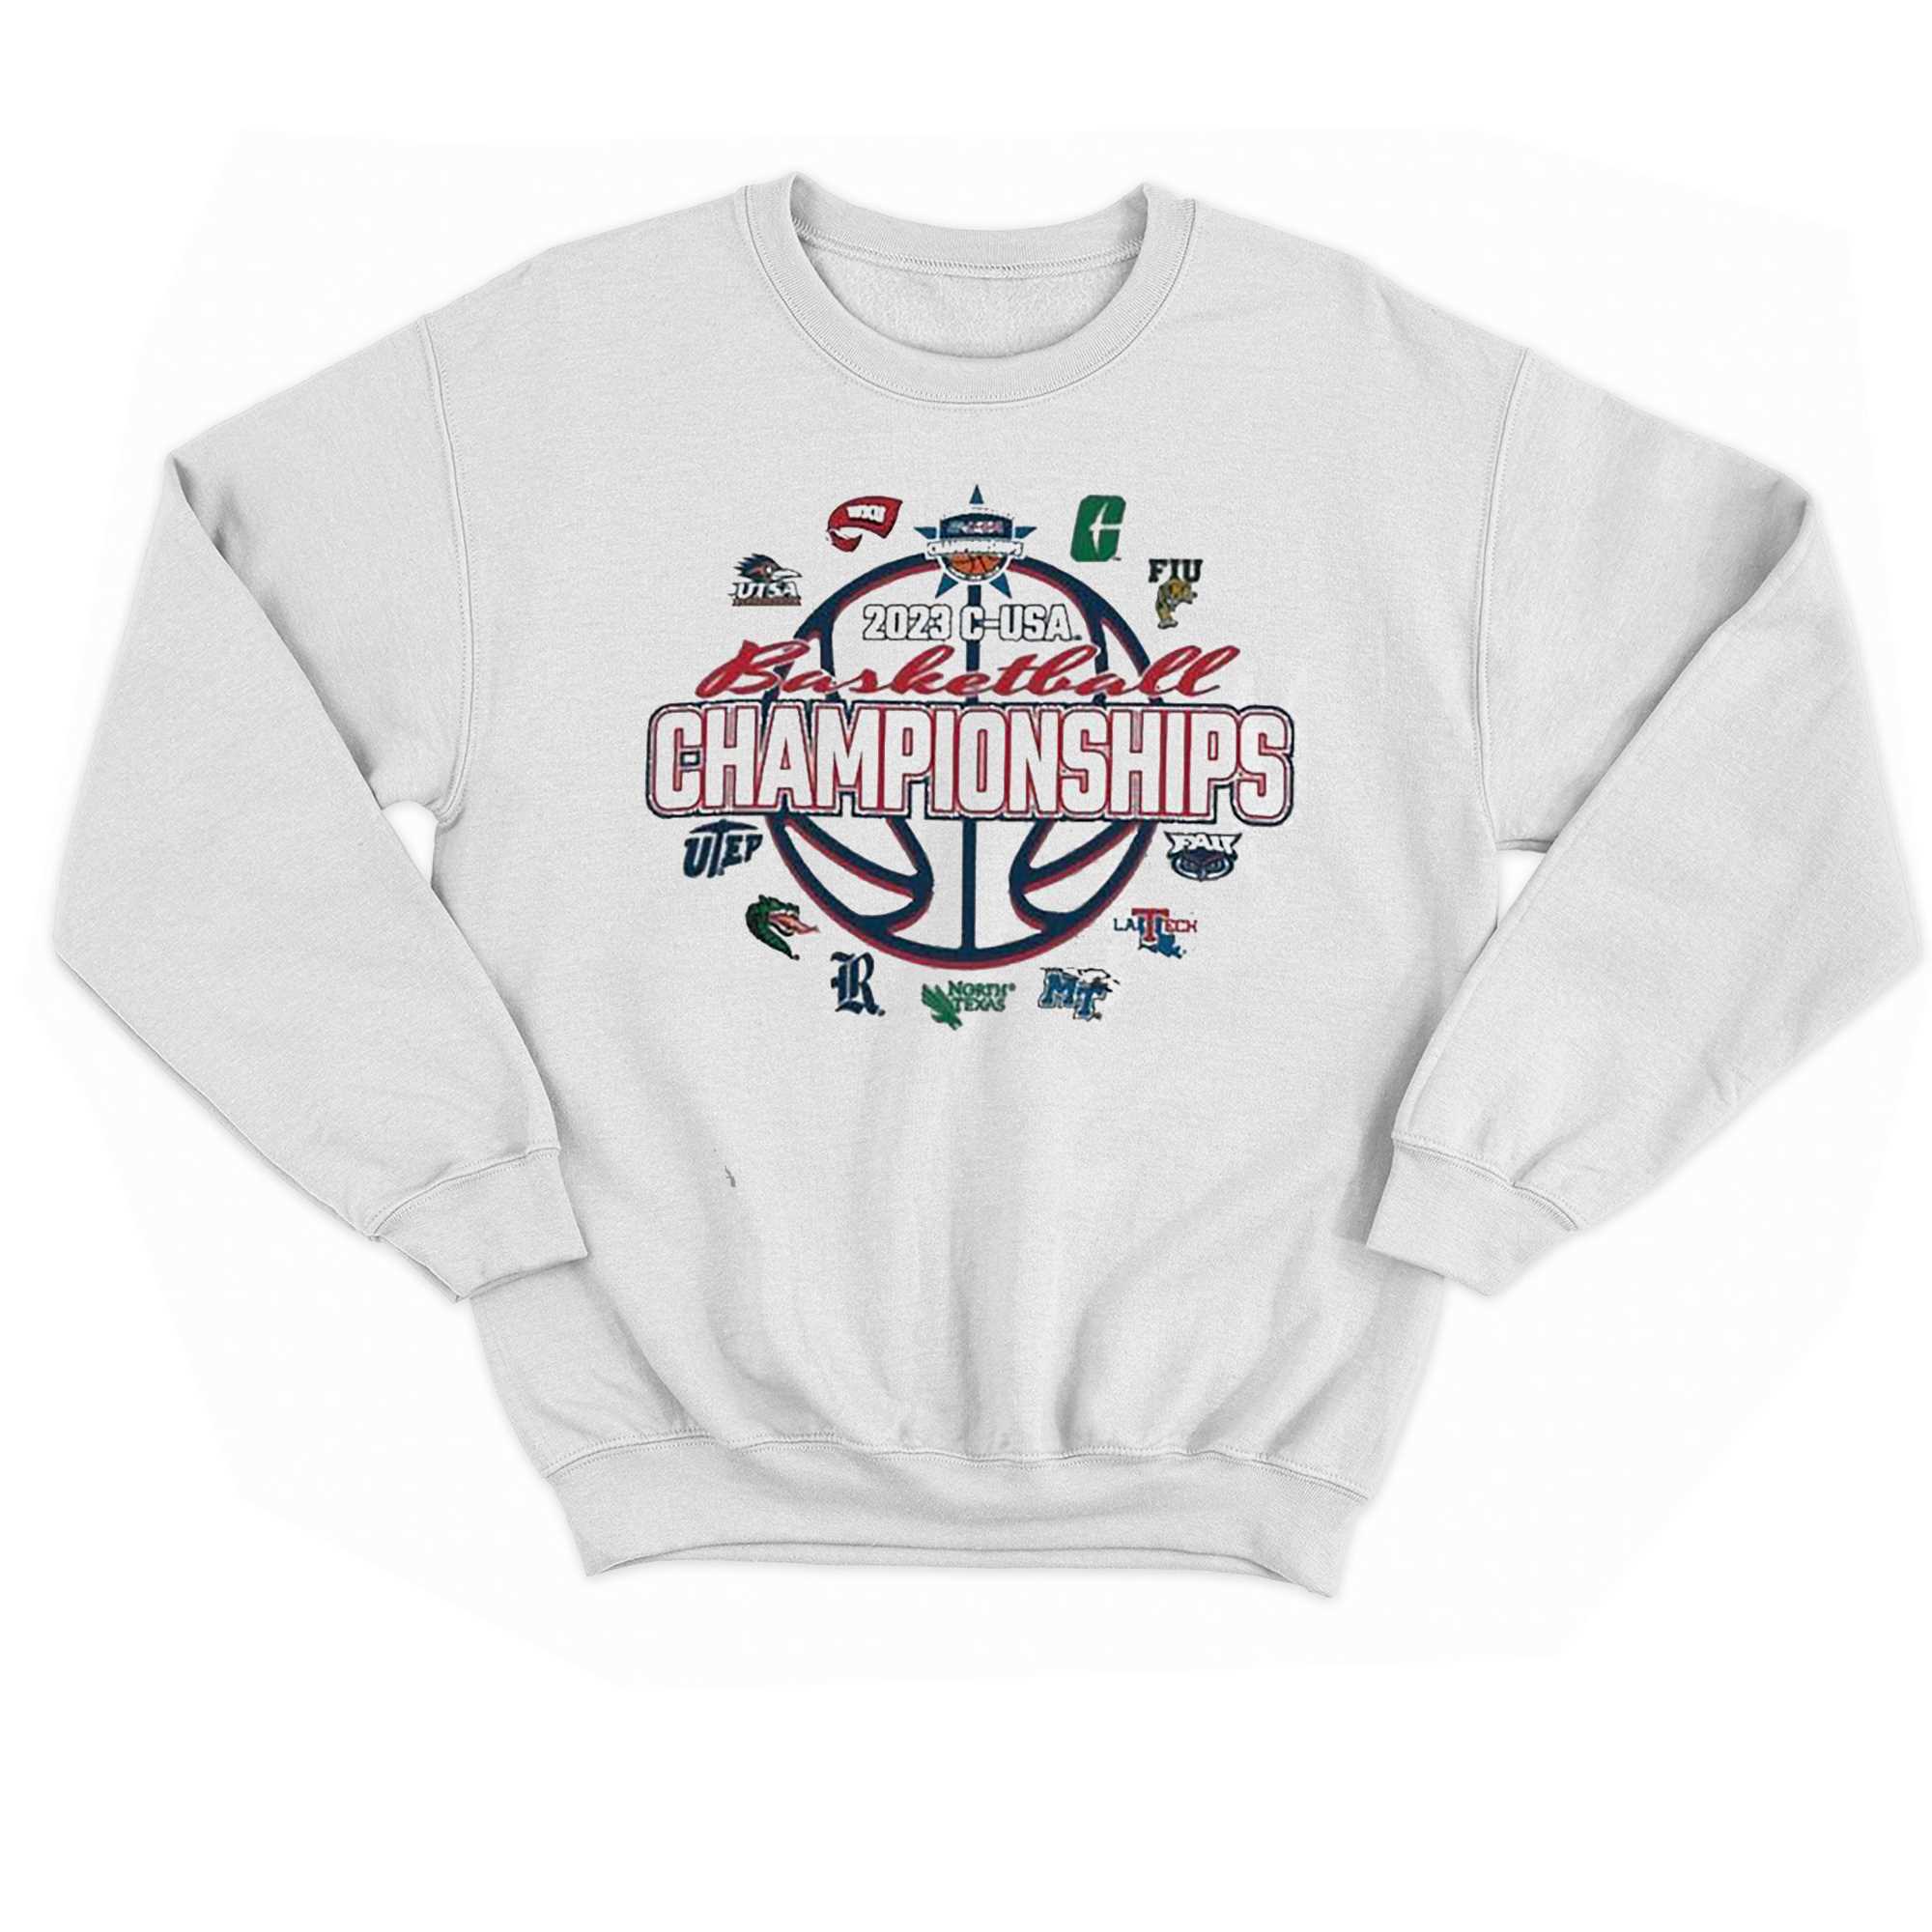 Official C Usa Basketball Championship 2023 Shirt 